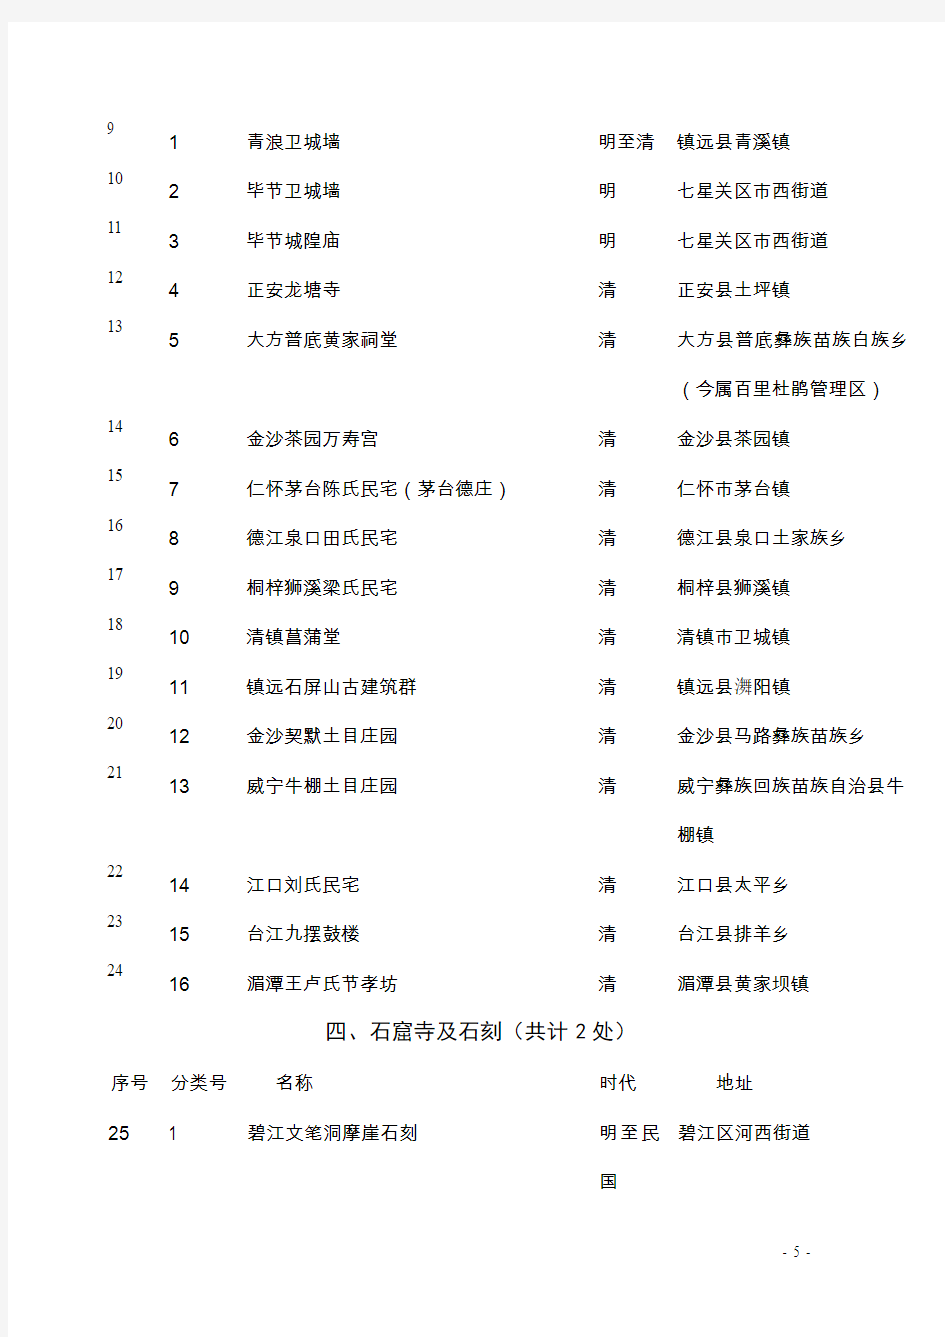 贵州省第六批省级文物保护单位名单及简介(共计220处)